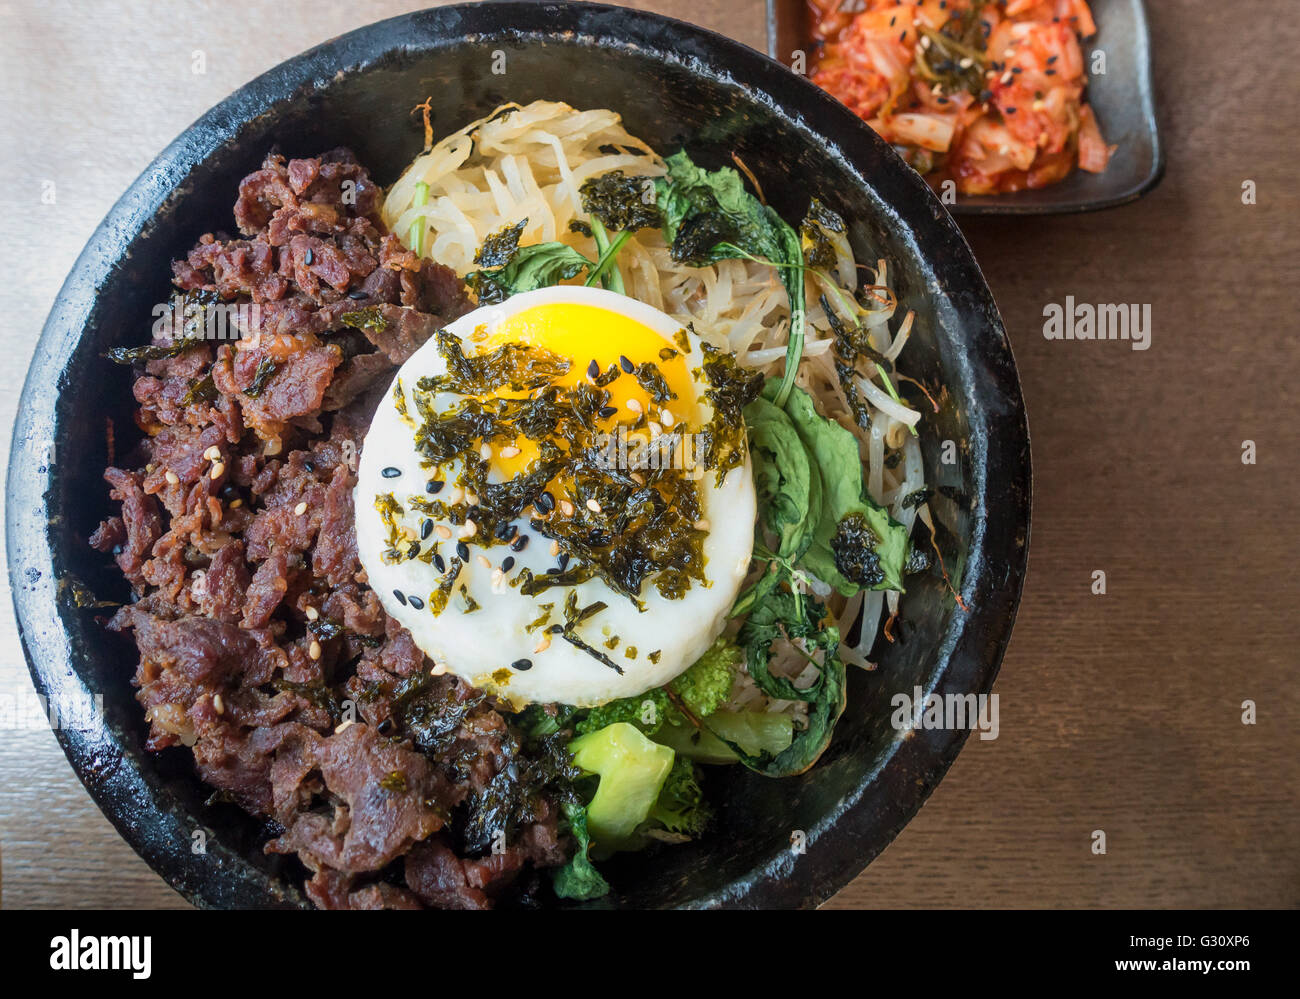 La cuisine coréenne : bibimbap, kimchi, boeuf, nouilles de riz, les verts, et un oeuf Banque D'Images